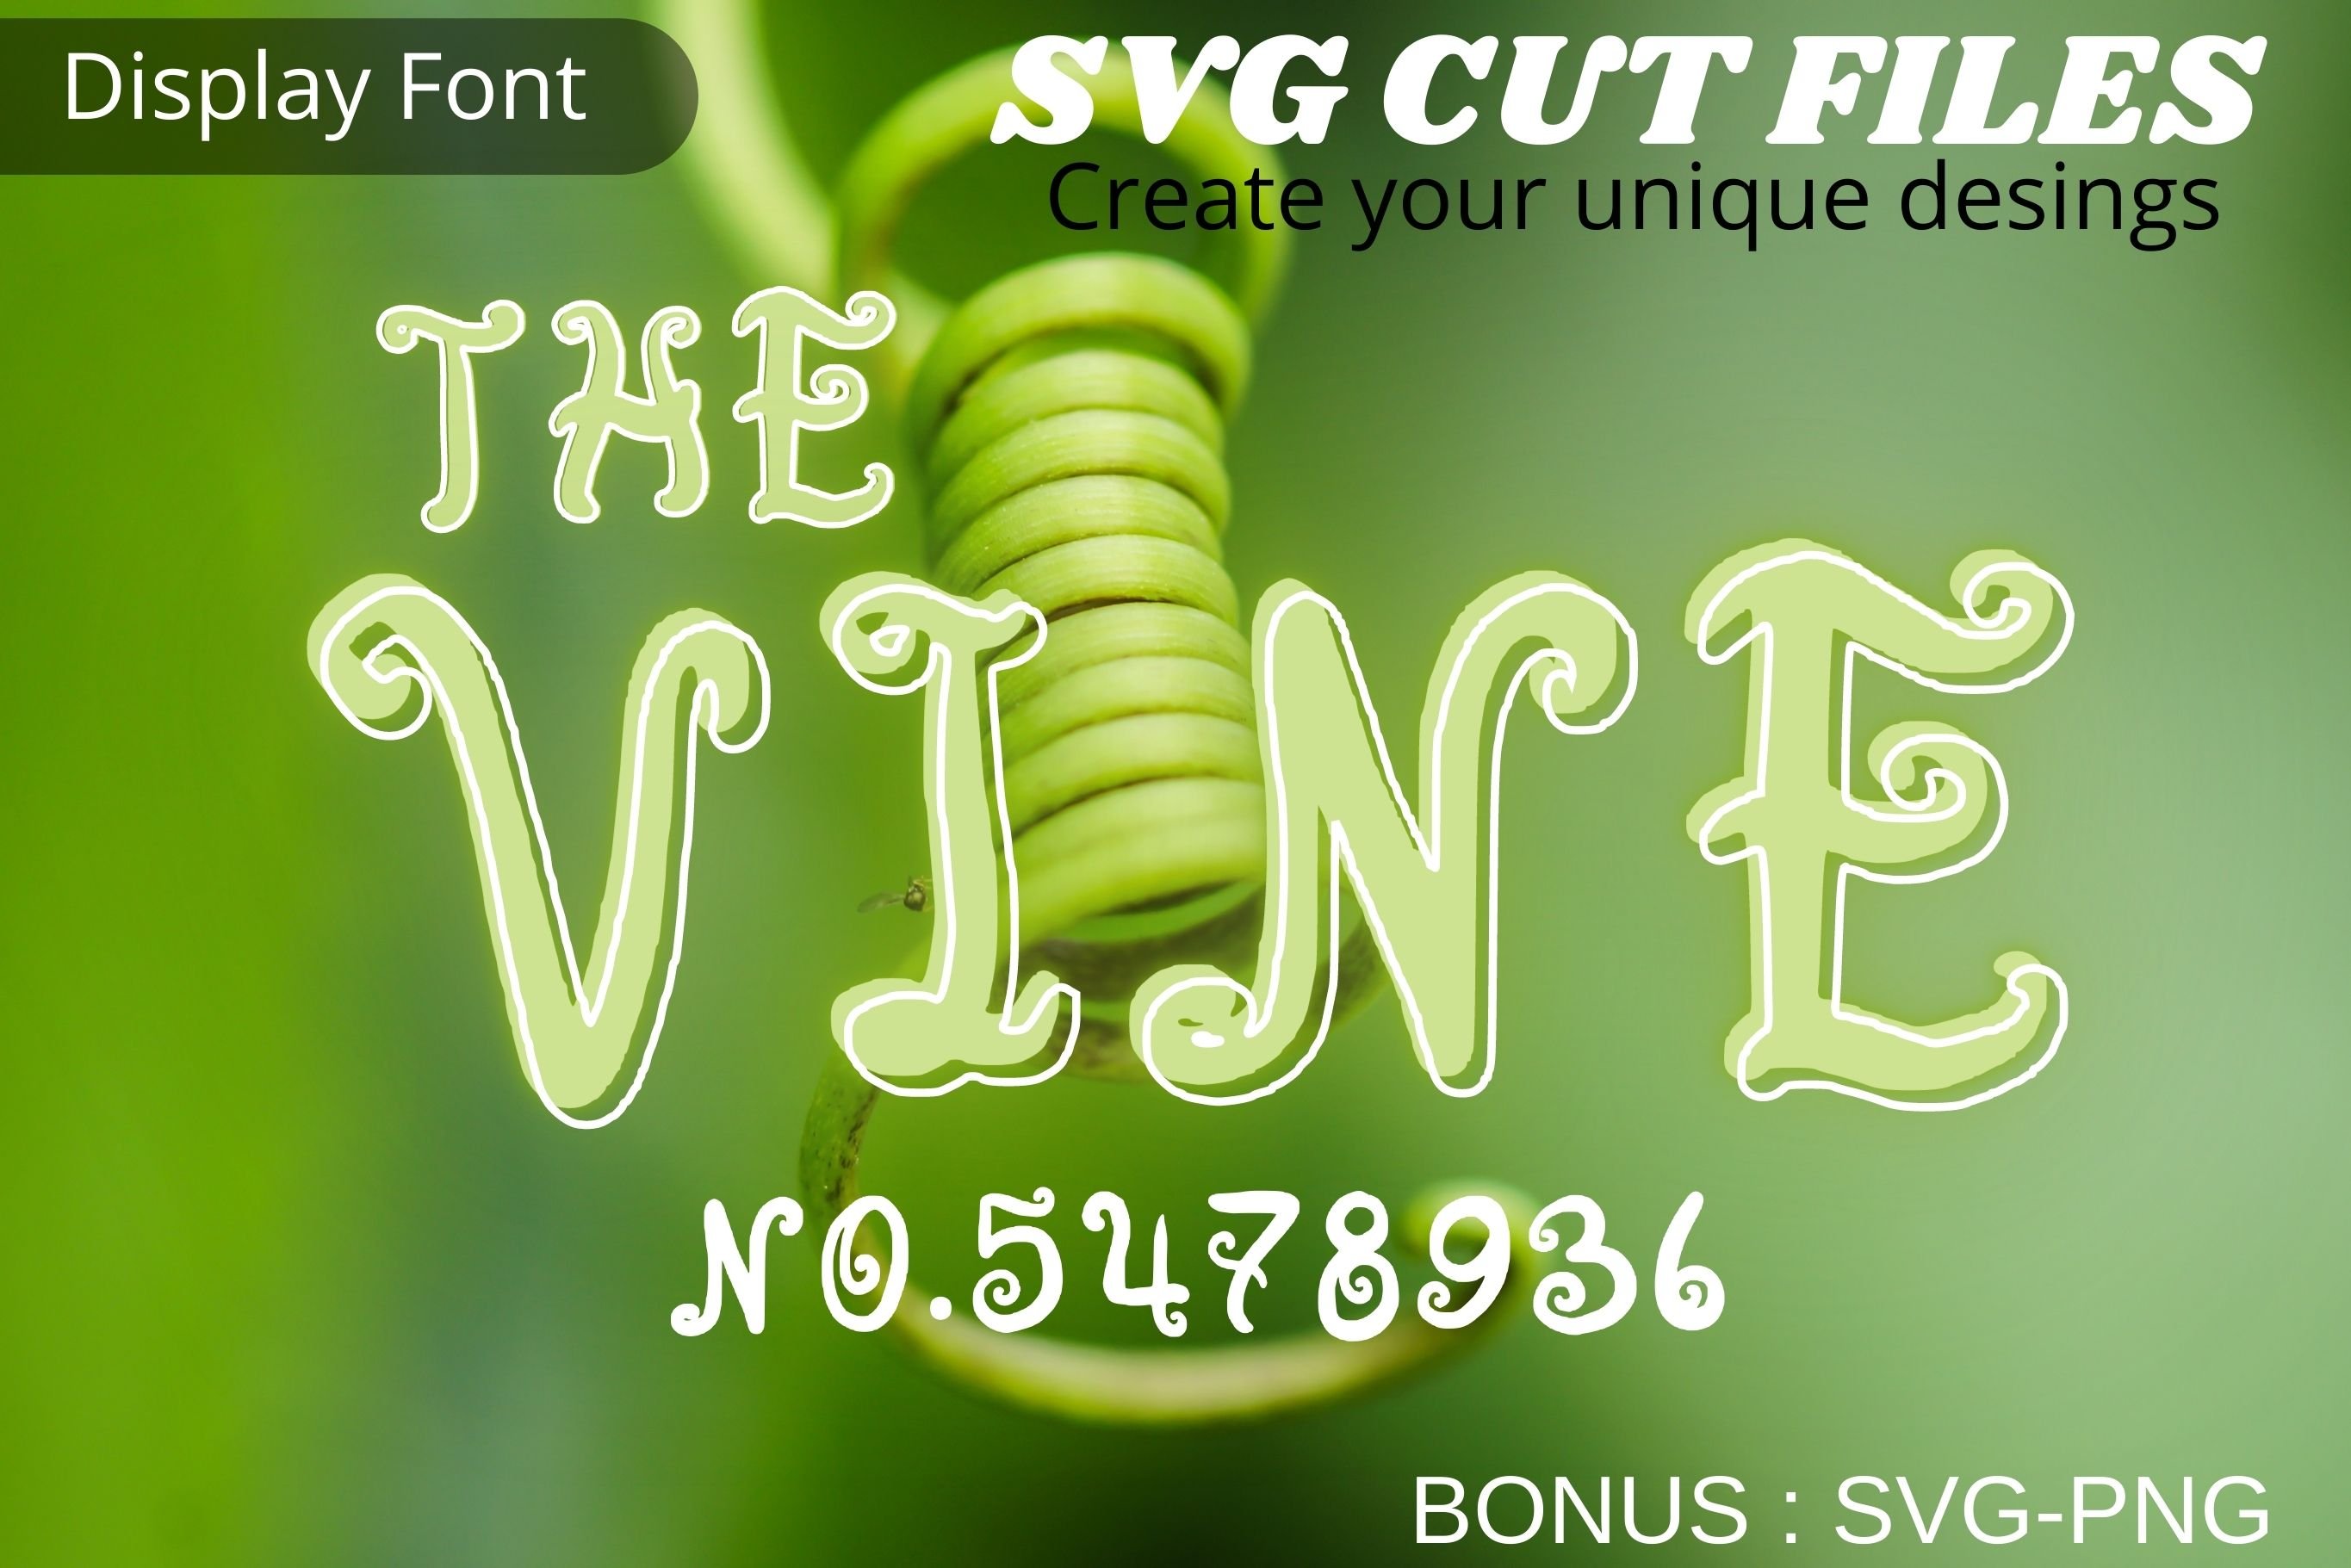 The Vine font, SVG font cover image.